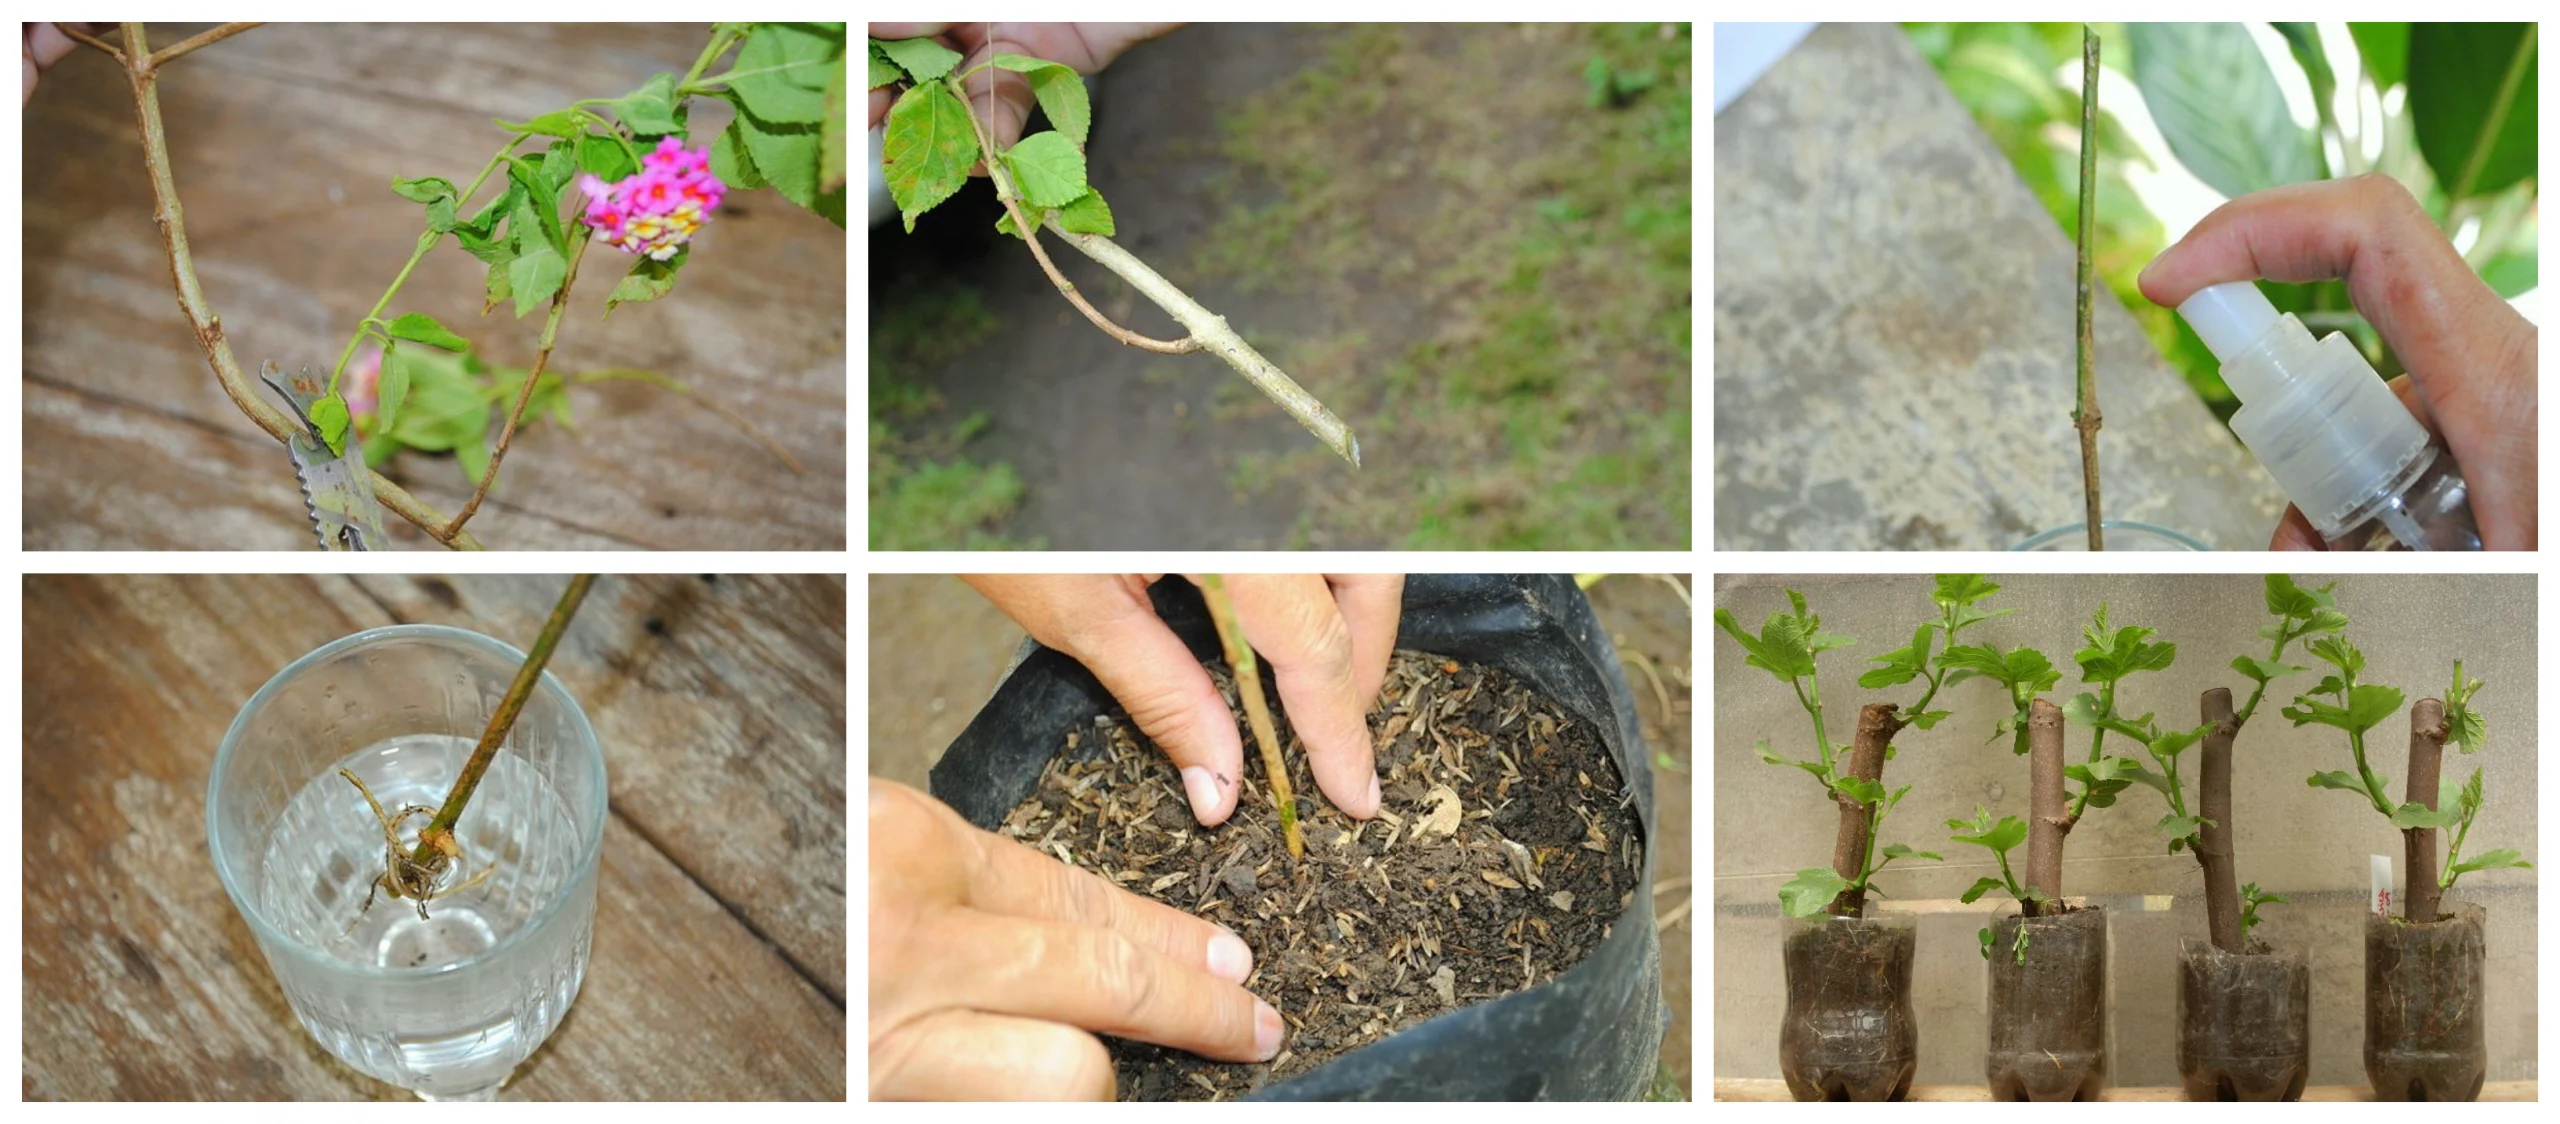 Paso a paso: cómo plantar un clavel cortado y disfrutar de su belleza en tu jardín